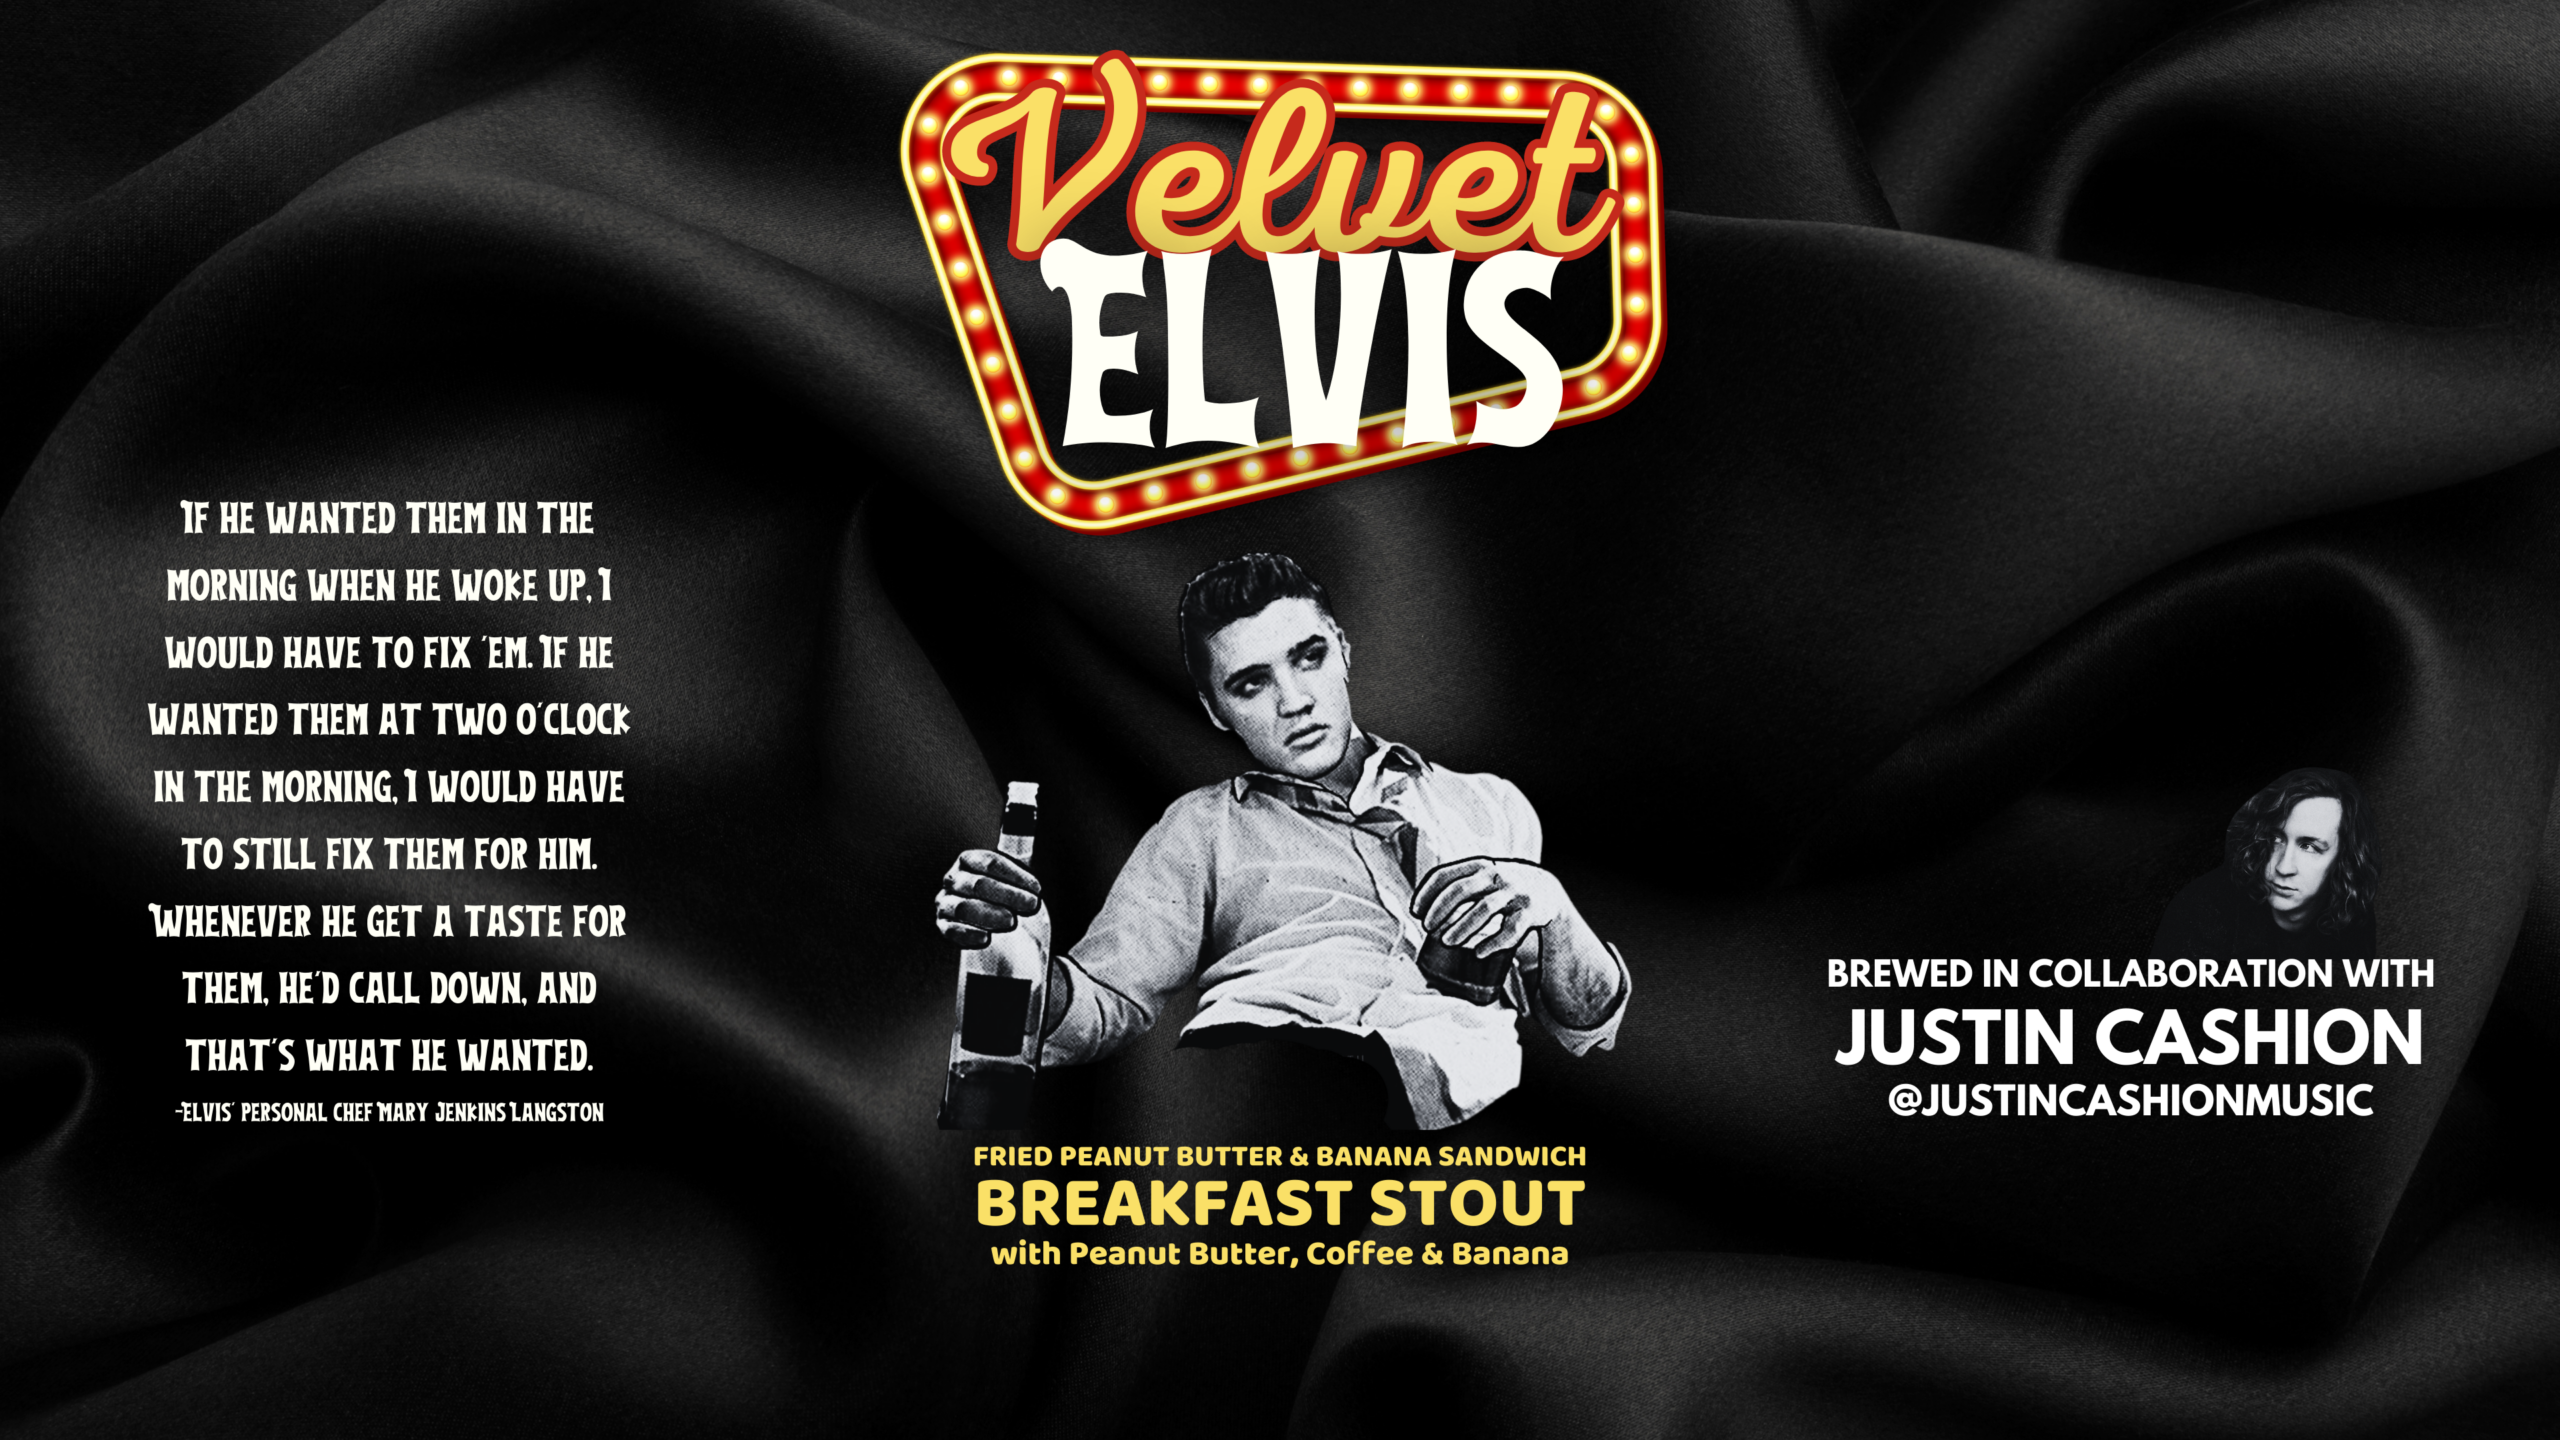 Velvet Elvis Fried Peanut Butter & Banana Breakfast Stout Release at On Rotation